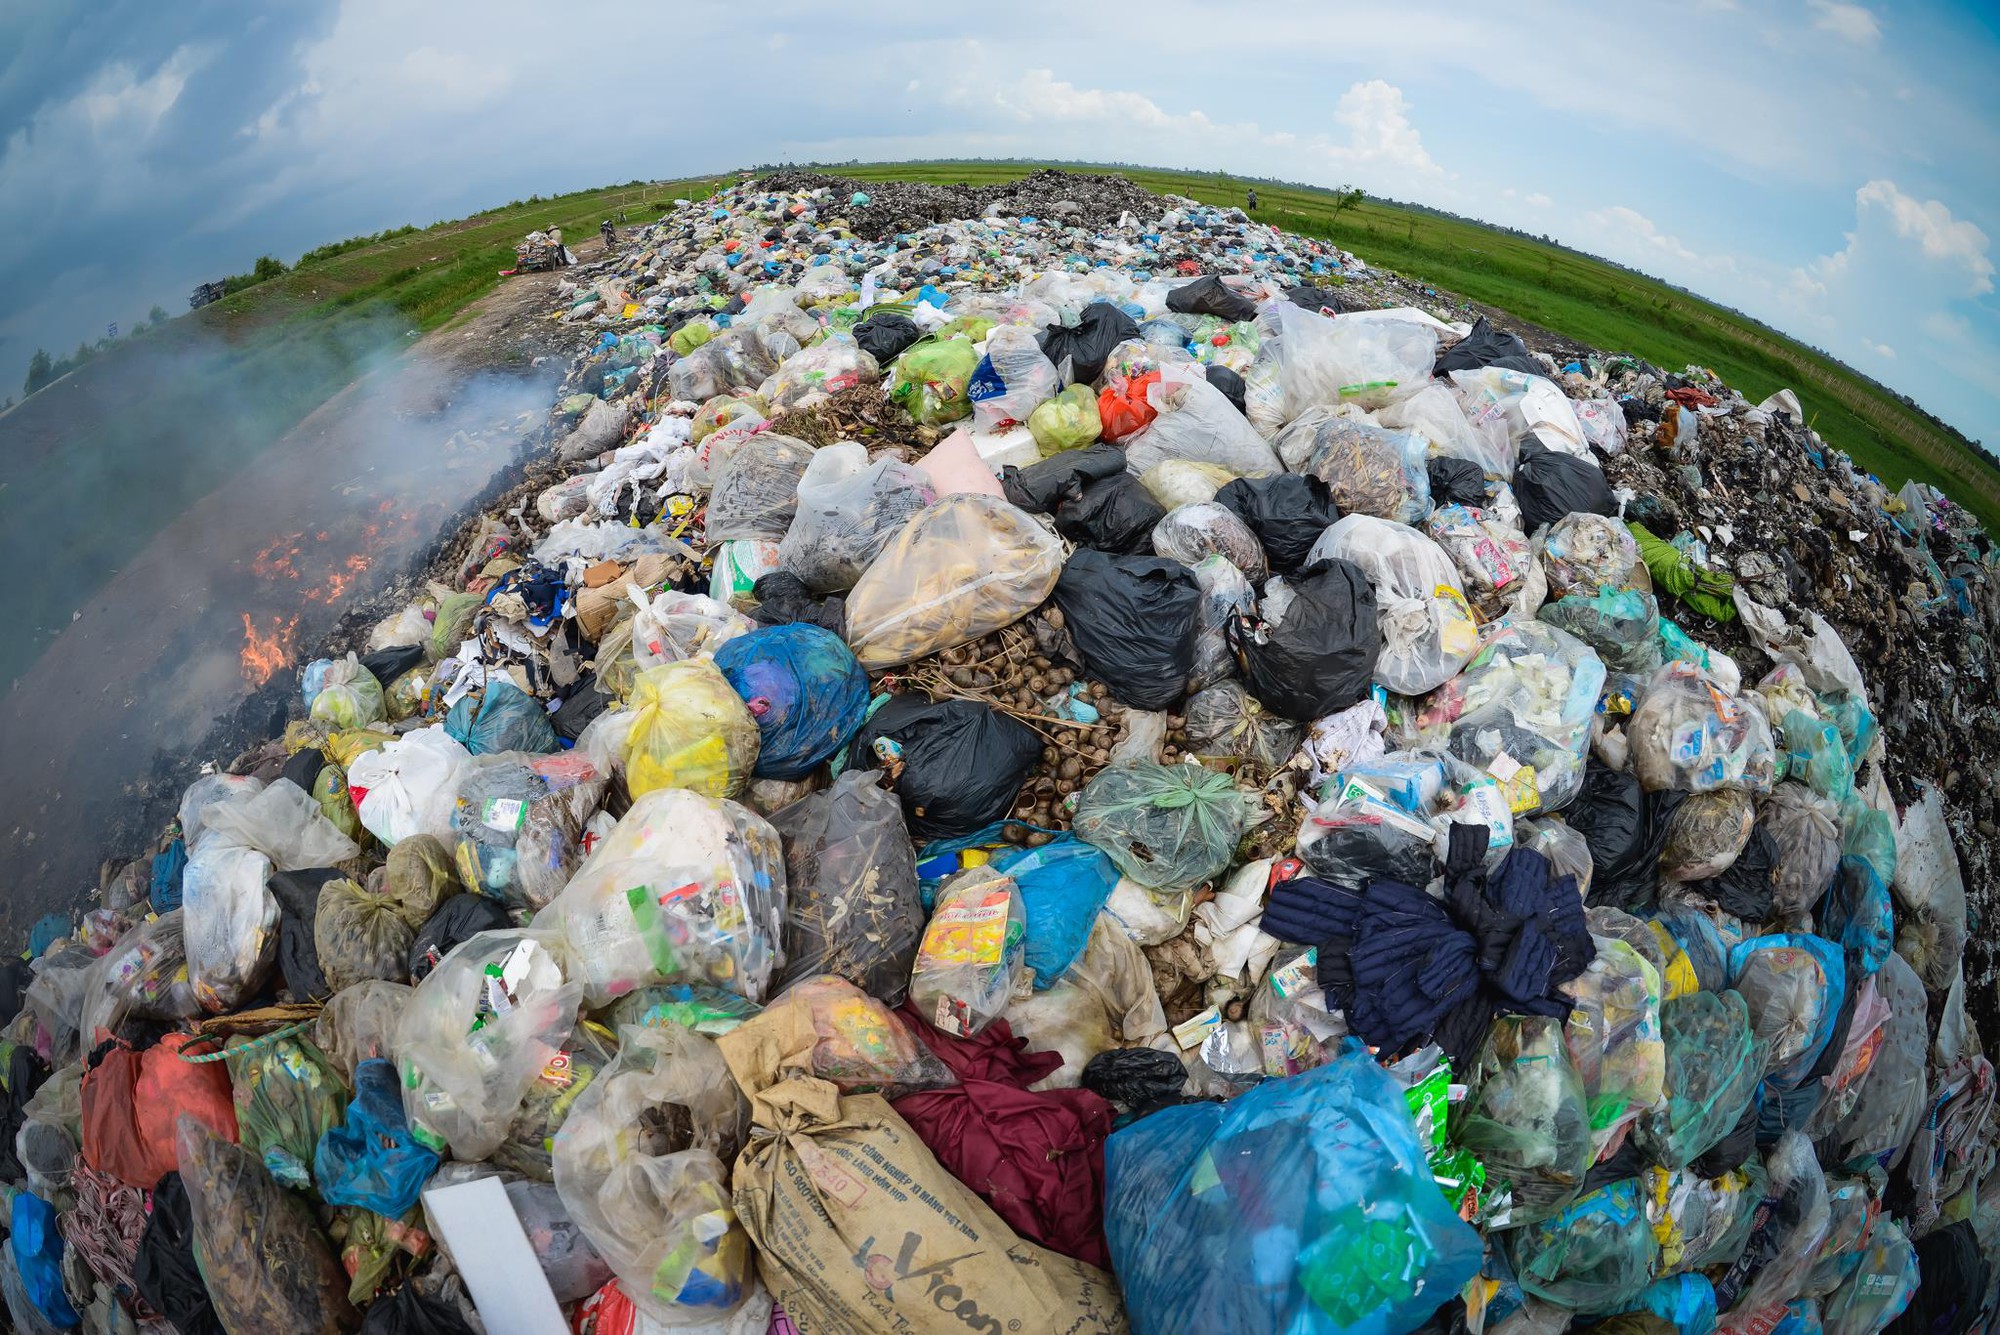 Nếu bạn quan tâm đến bảo vệ môi trường, hãy xem hình ảnh về rác thải nhựa. Chúng ta sẽ cảm nhận được mức độ ô nhiễm mà rác thải nhựa gây ra, nhưng cũng sẽ nhận ra tầm quan trọng của việc tái chế và giảm thiểu sử dụng nhựa không cần thiết.